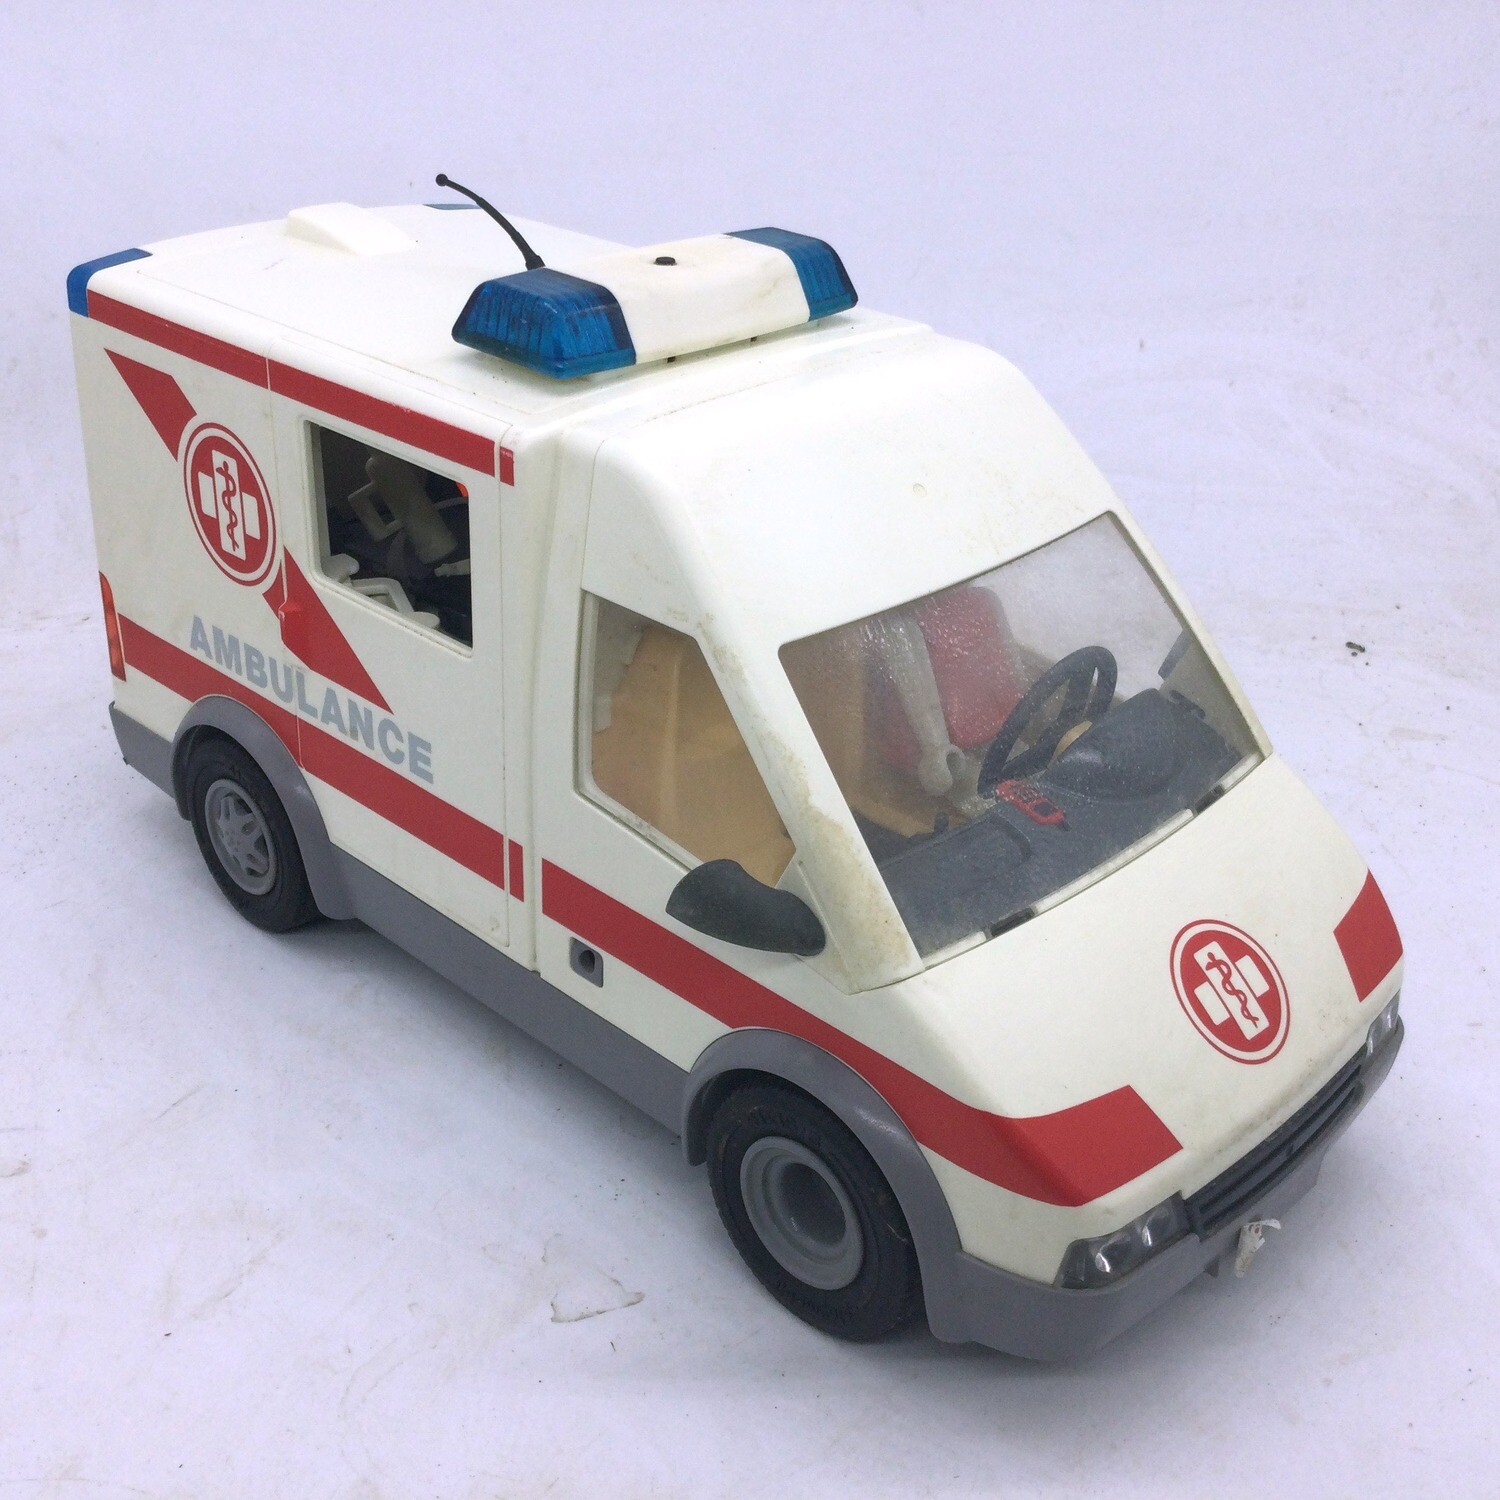 Playmobil - A1401867 - Ambulance Et Secouriste, traqueur de prix,  historique des prix du , montres de prix , alertes de baisse de  prix des